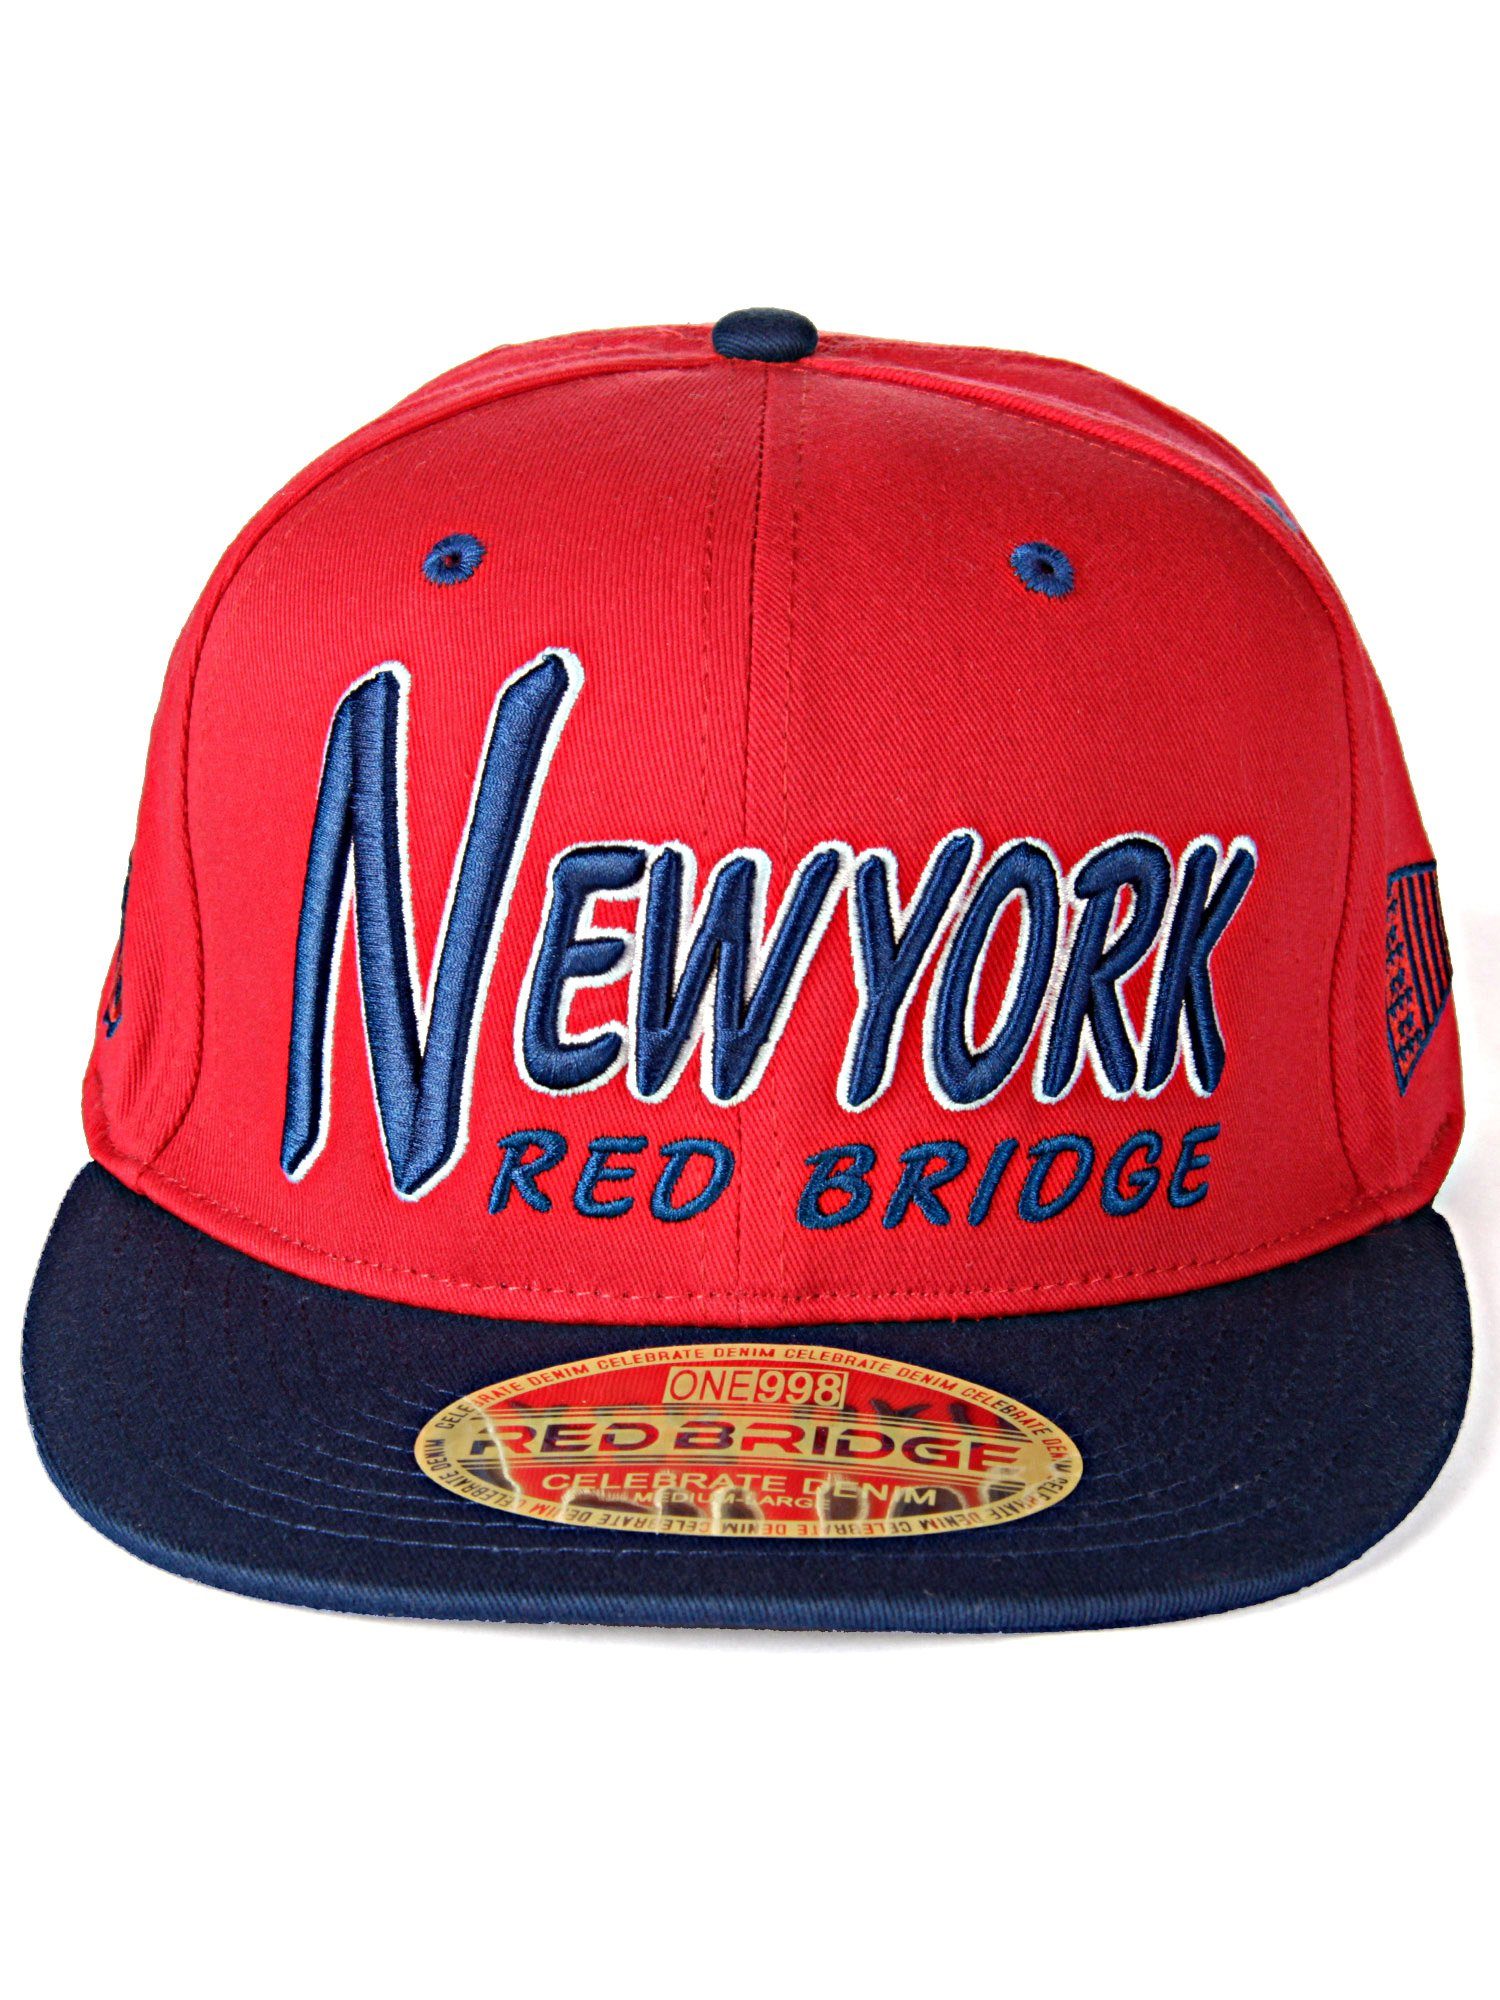 stark RedBridge Baseball Cap Schirm dunkelblau-rot mit Bootle kontrastfarbigem